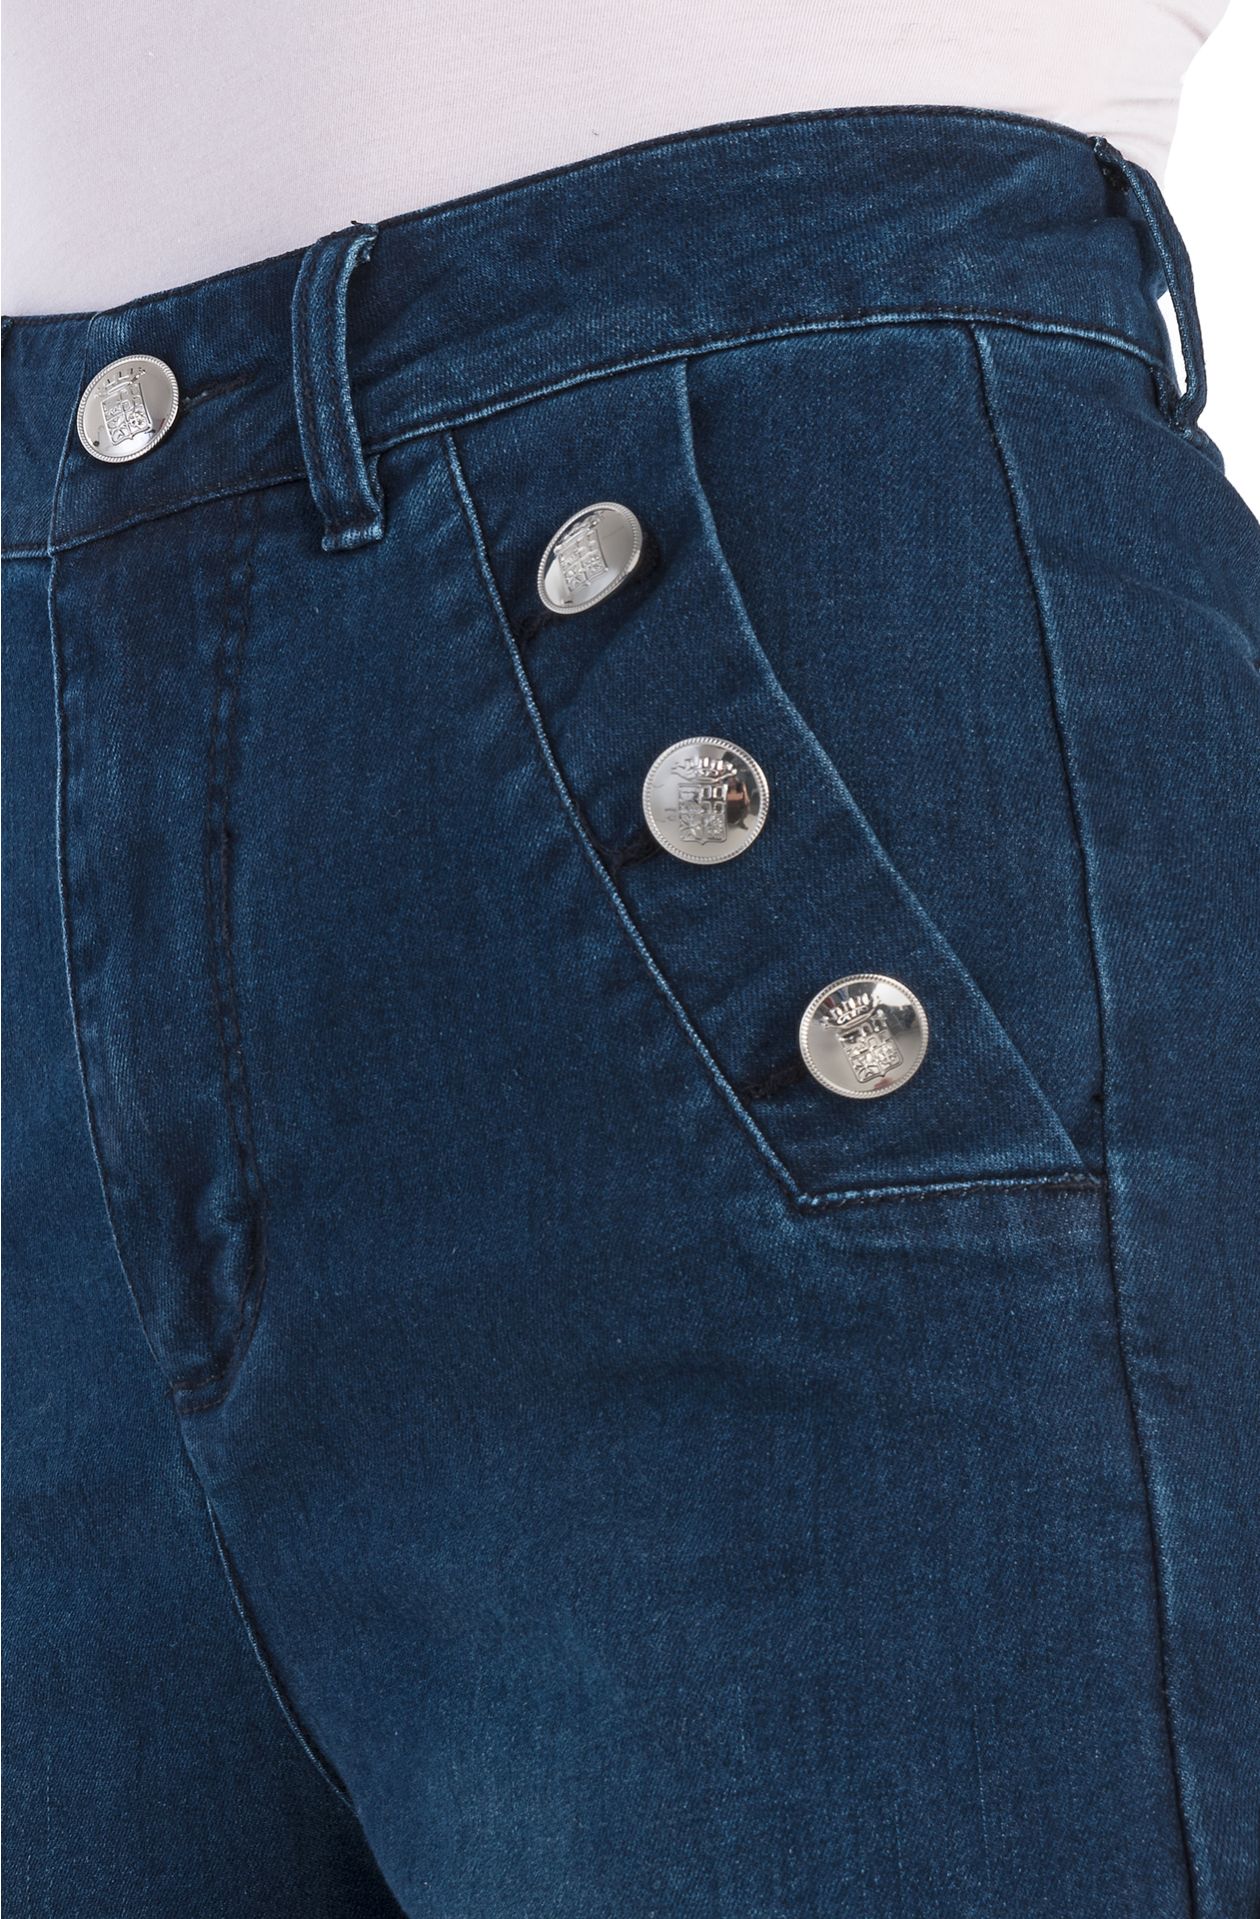 Jeans con botones de metal